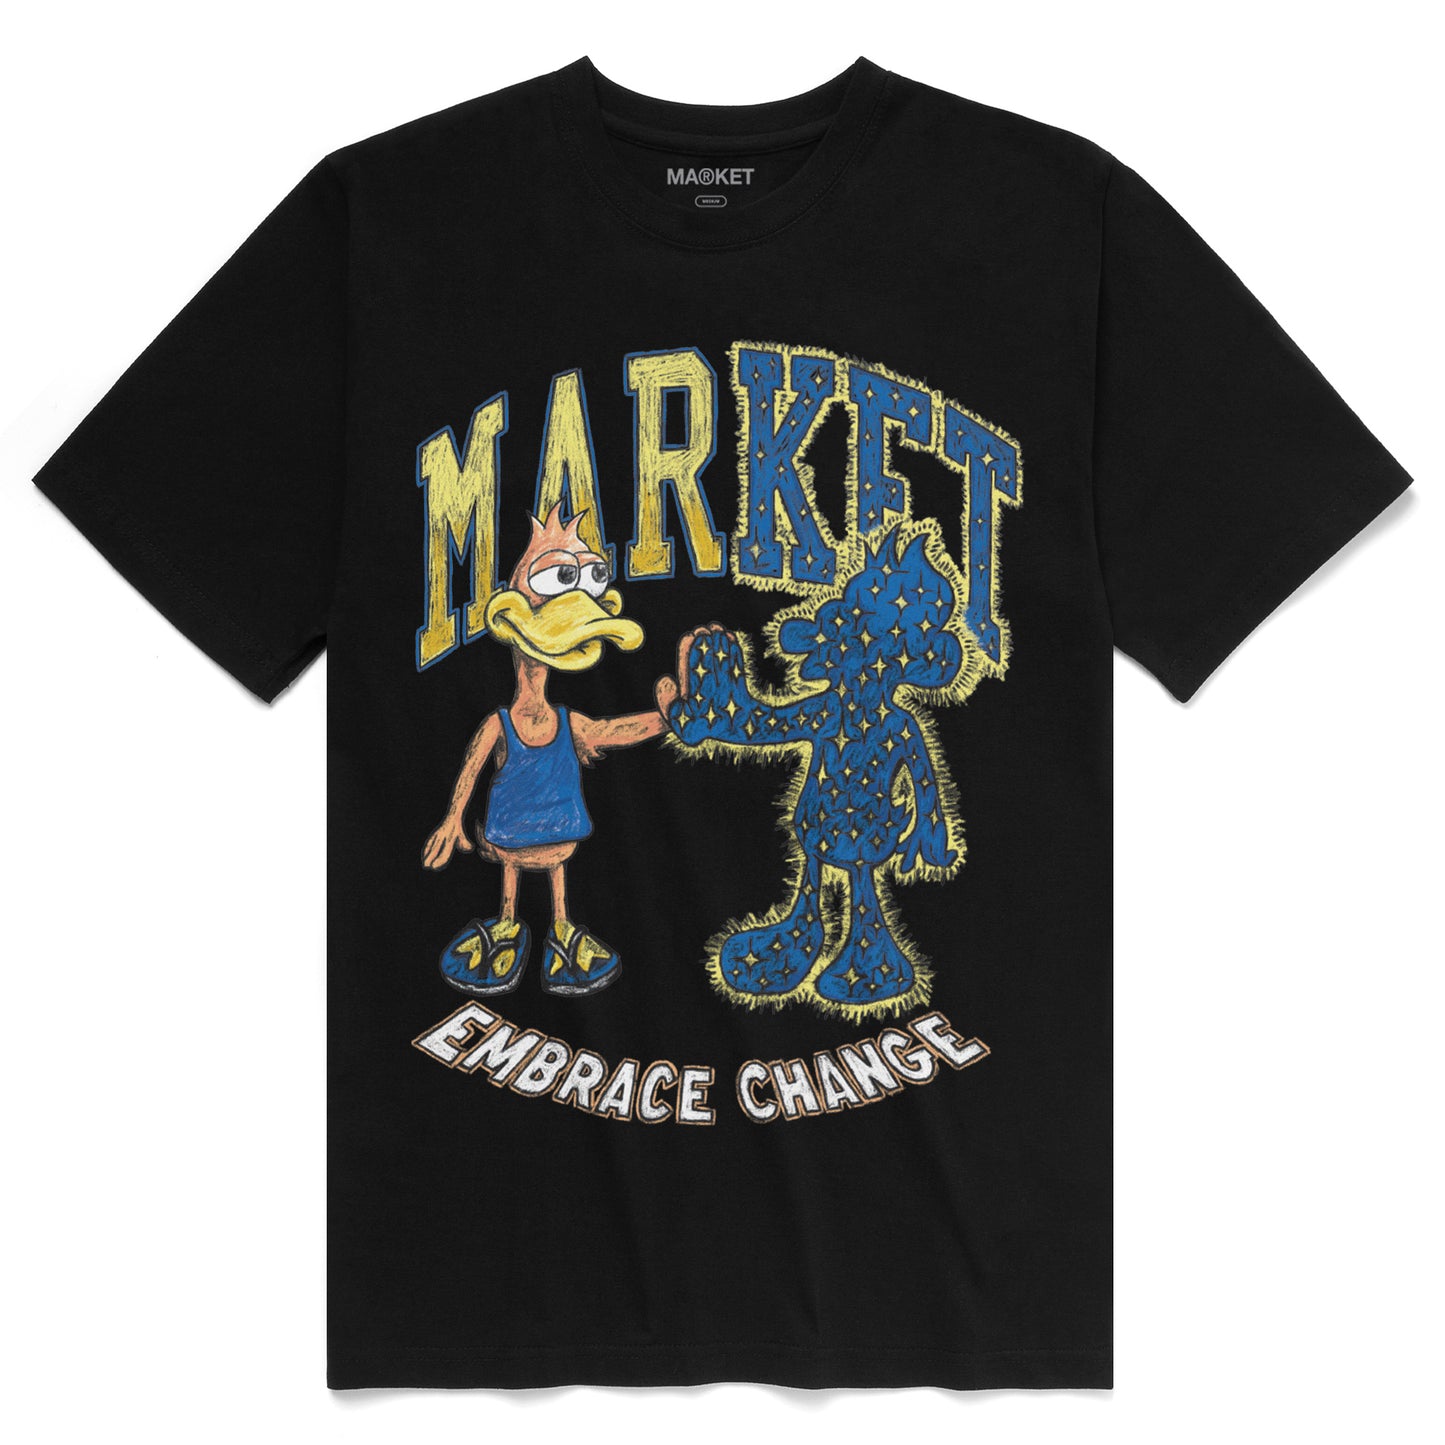 MARKET Dark And Light Duck T-Shirt